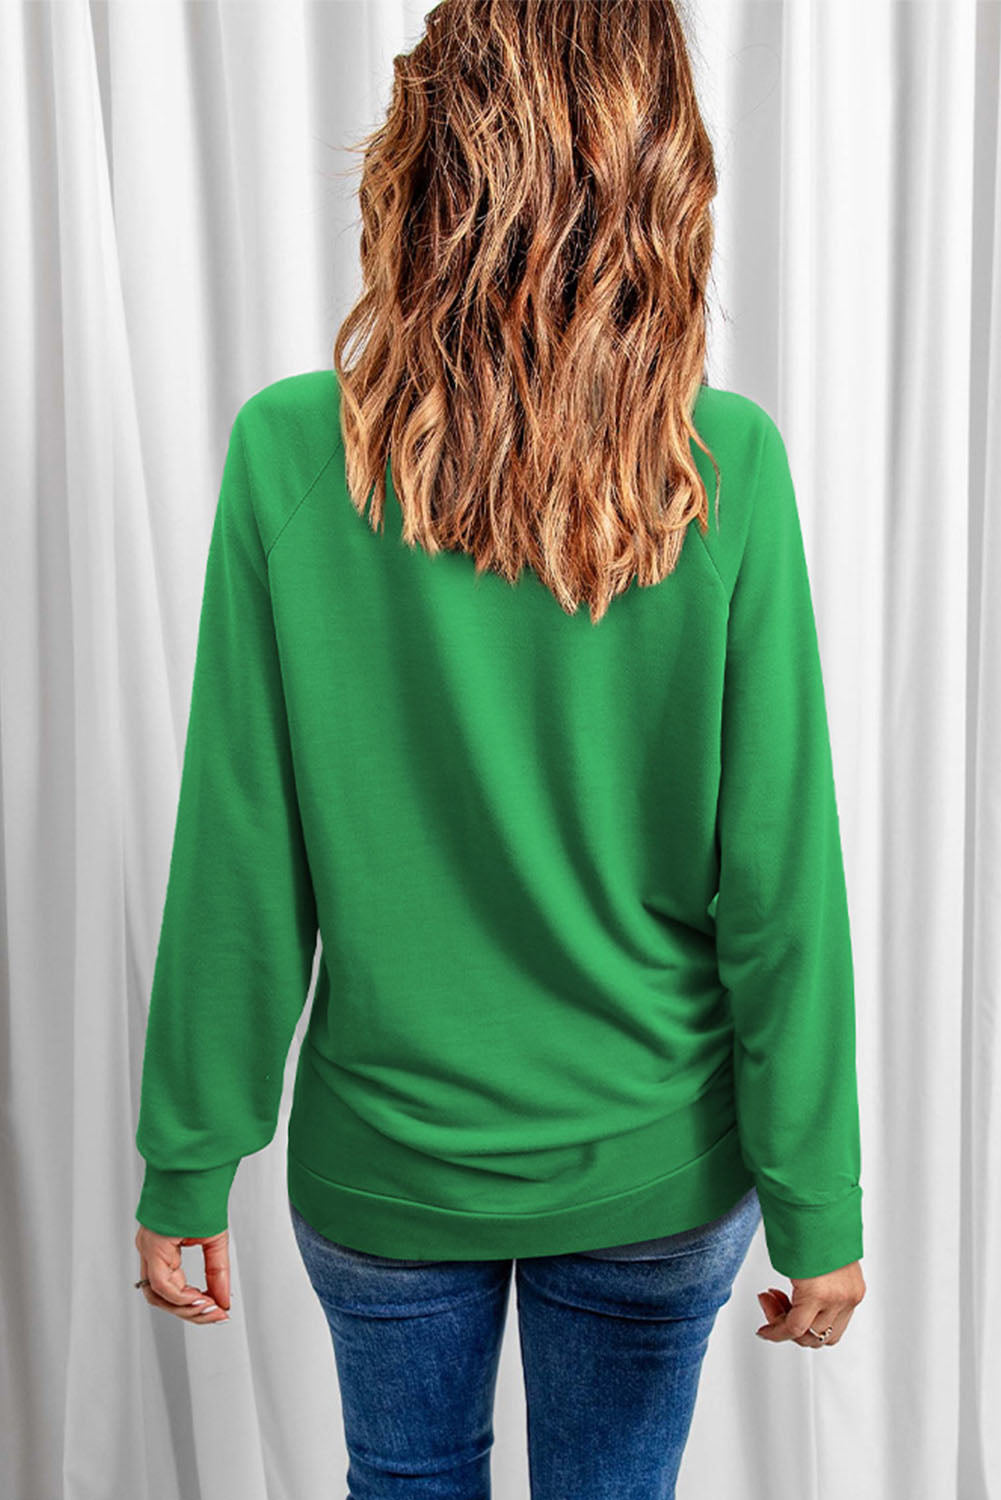 Green Lucky Clover Graphic St Patricks Pullover Sweatshirt Graphic Sweatshirts JT's Designer Fashion